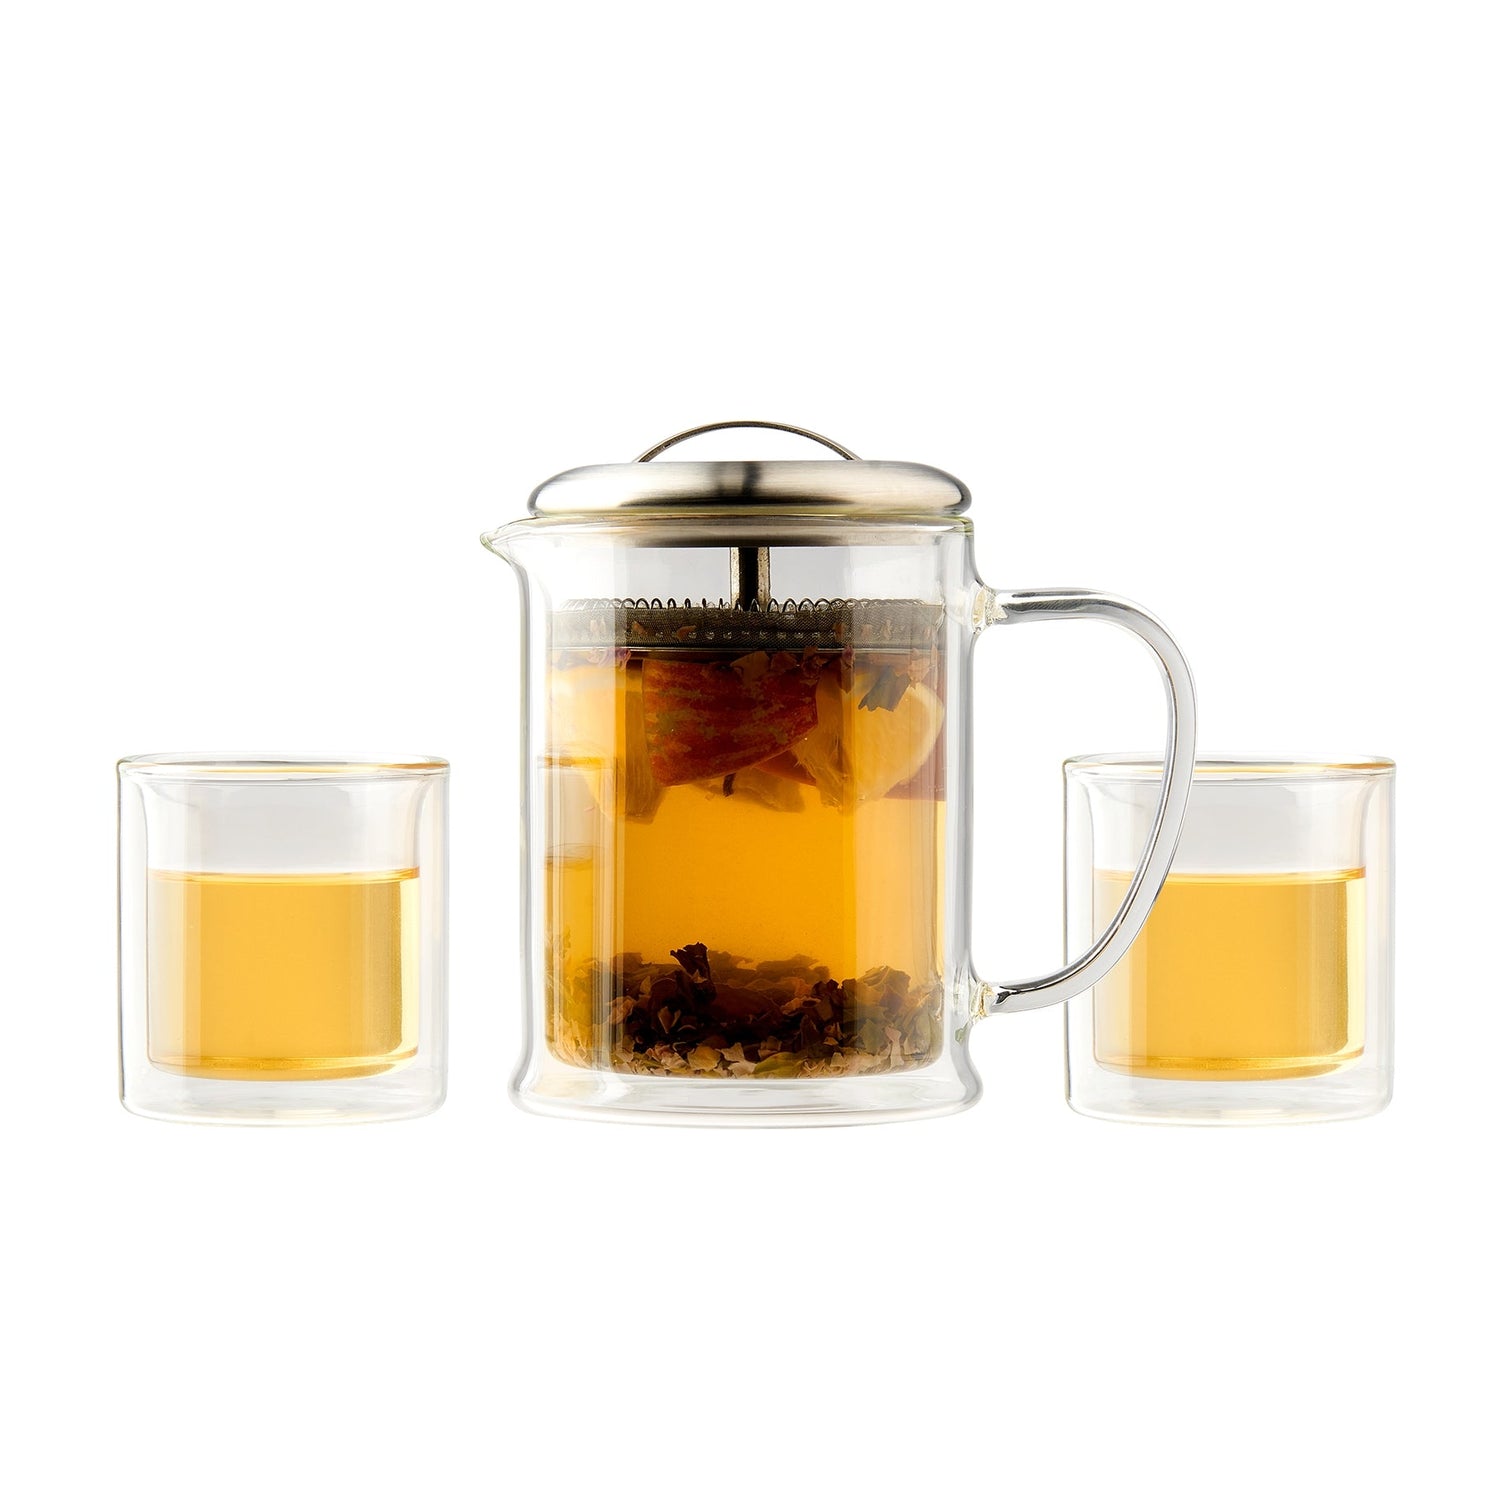 Casaware 3 Piece Tea Set - Loose Leaf Tea Market